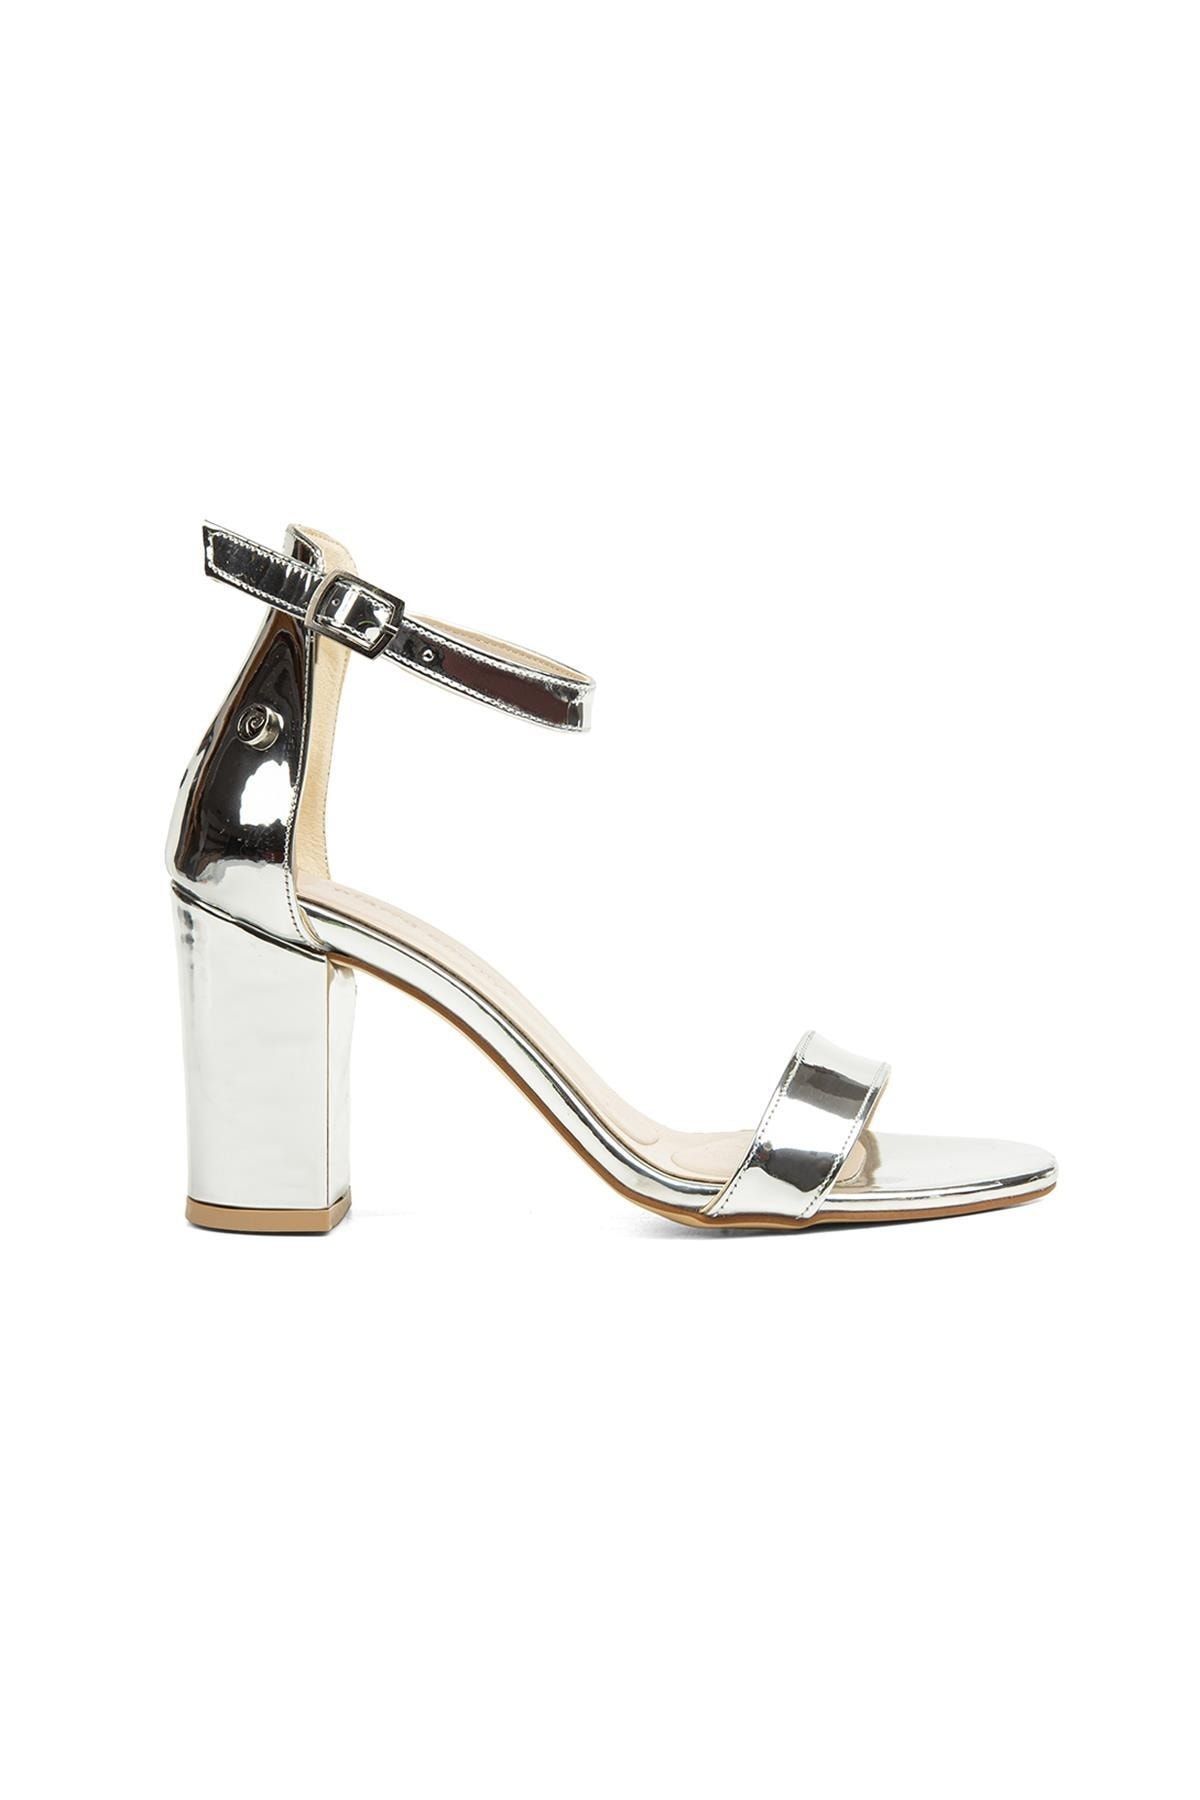 Pierre Cardin ® | Pc-52200-3951 Gümüş - Kadın Topuklu Ayakkabı